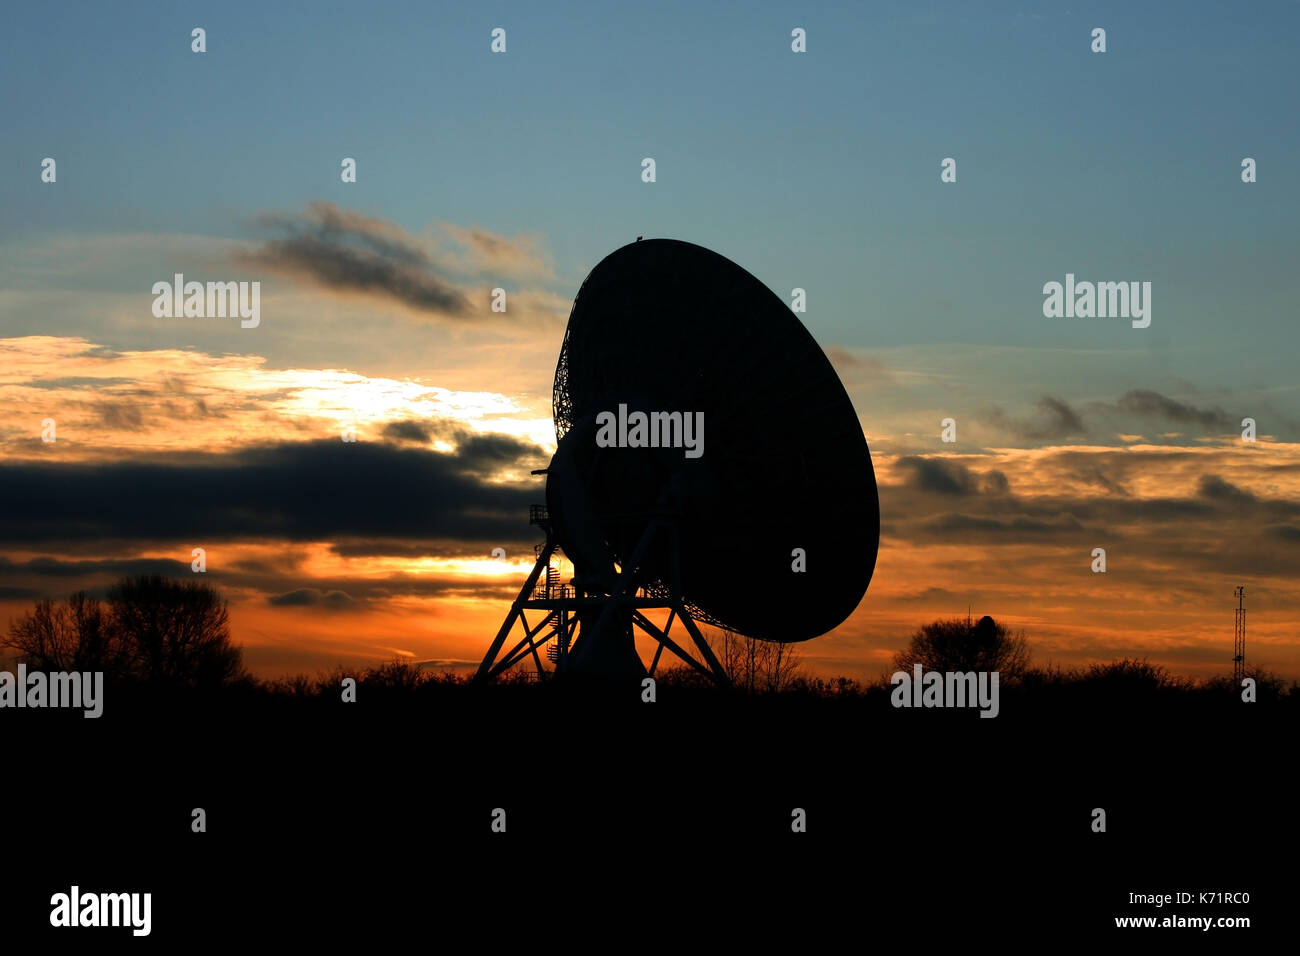 Die MERLIN Radioteleskop bei Sonnenuntergang. Mullard Observatorium liegt im Süden von Cambridge, Großbritannien. Stockfoto